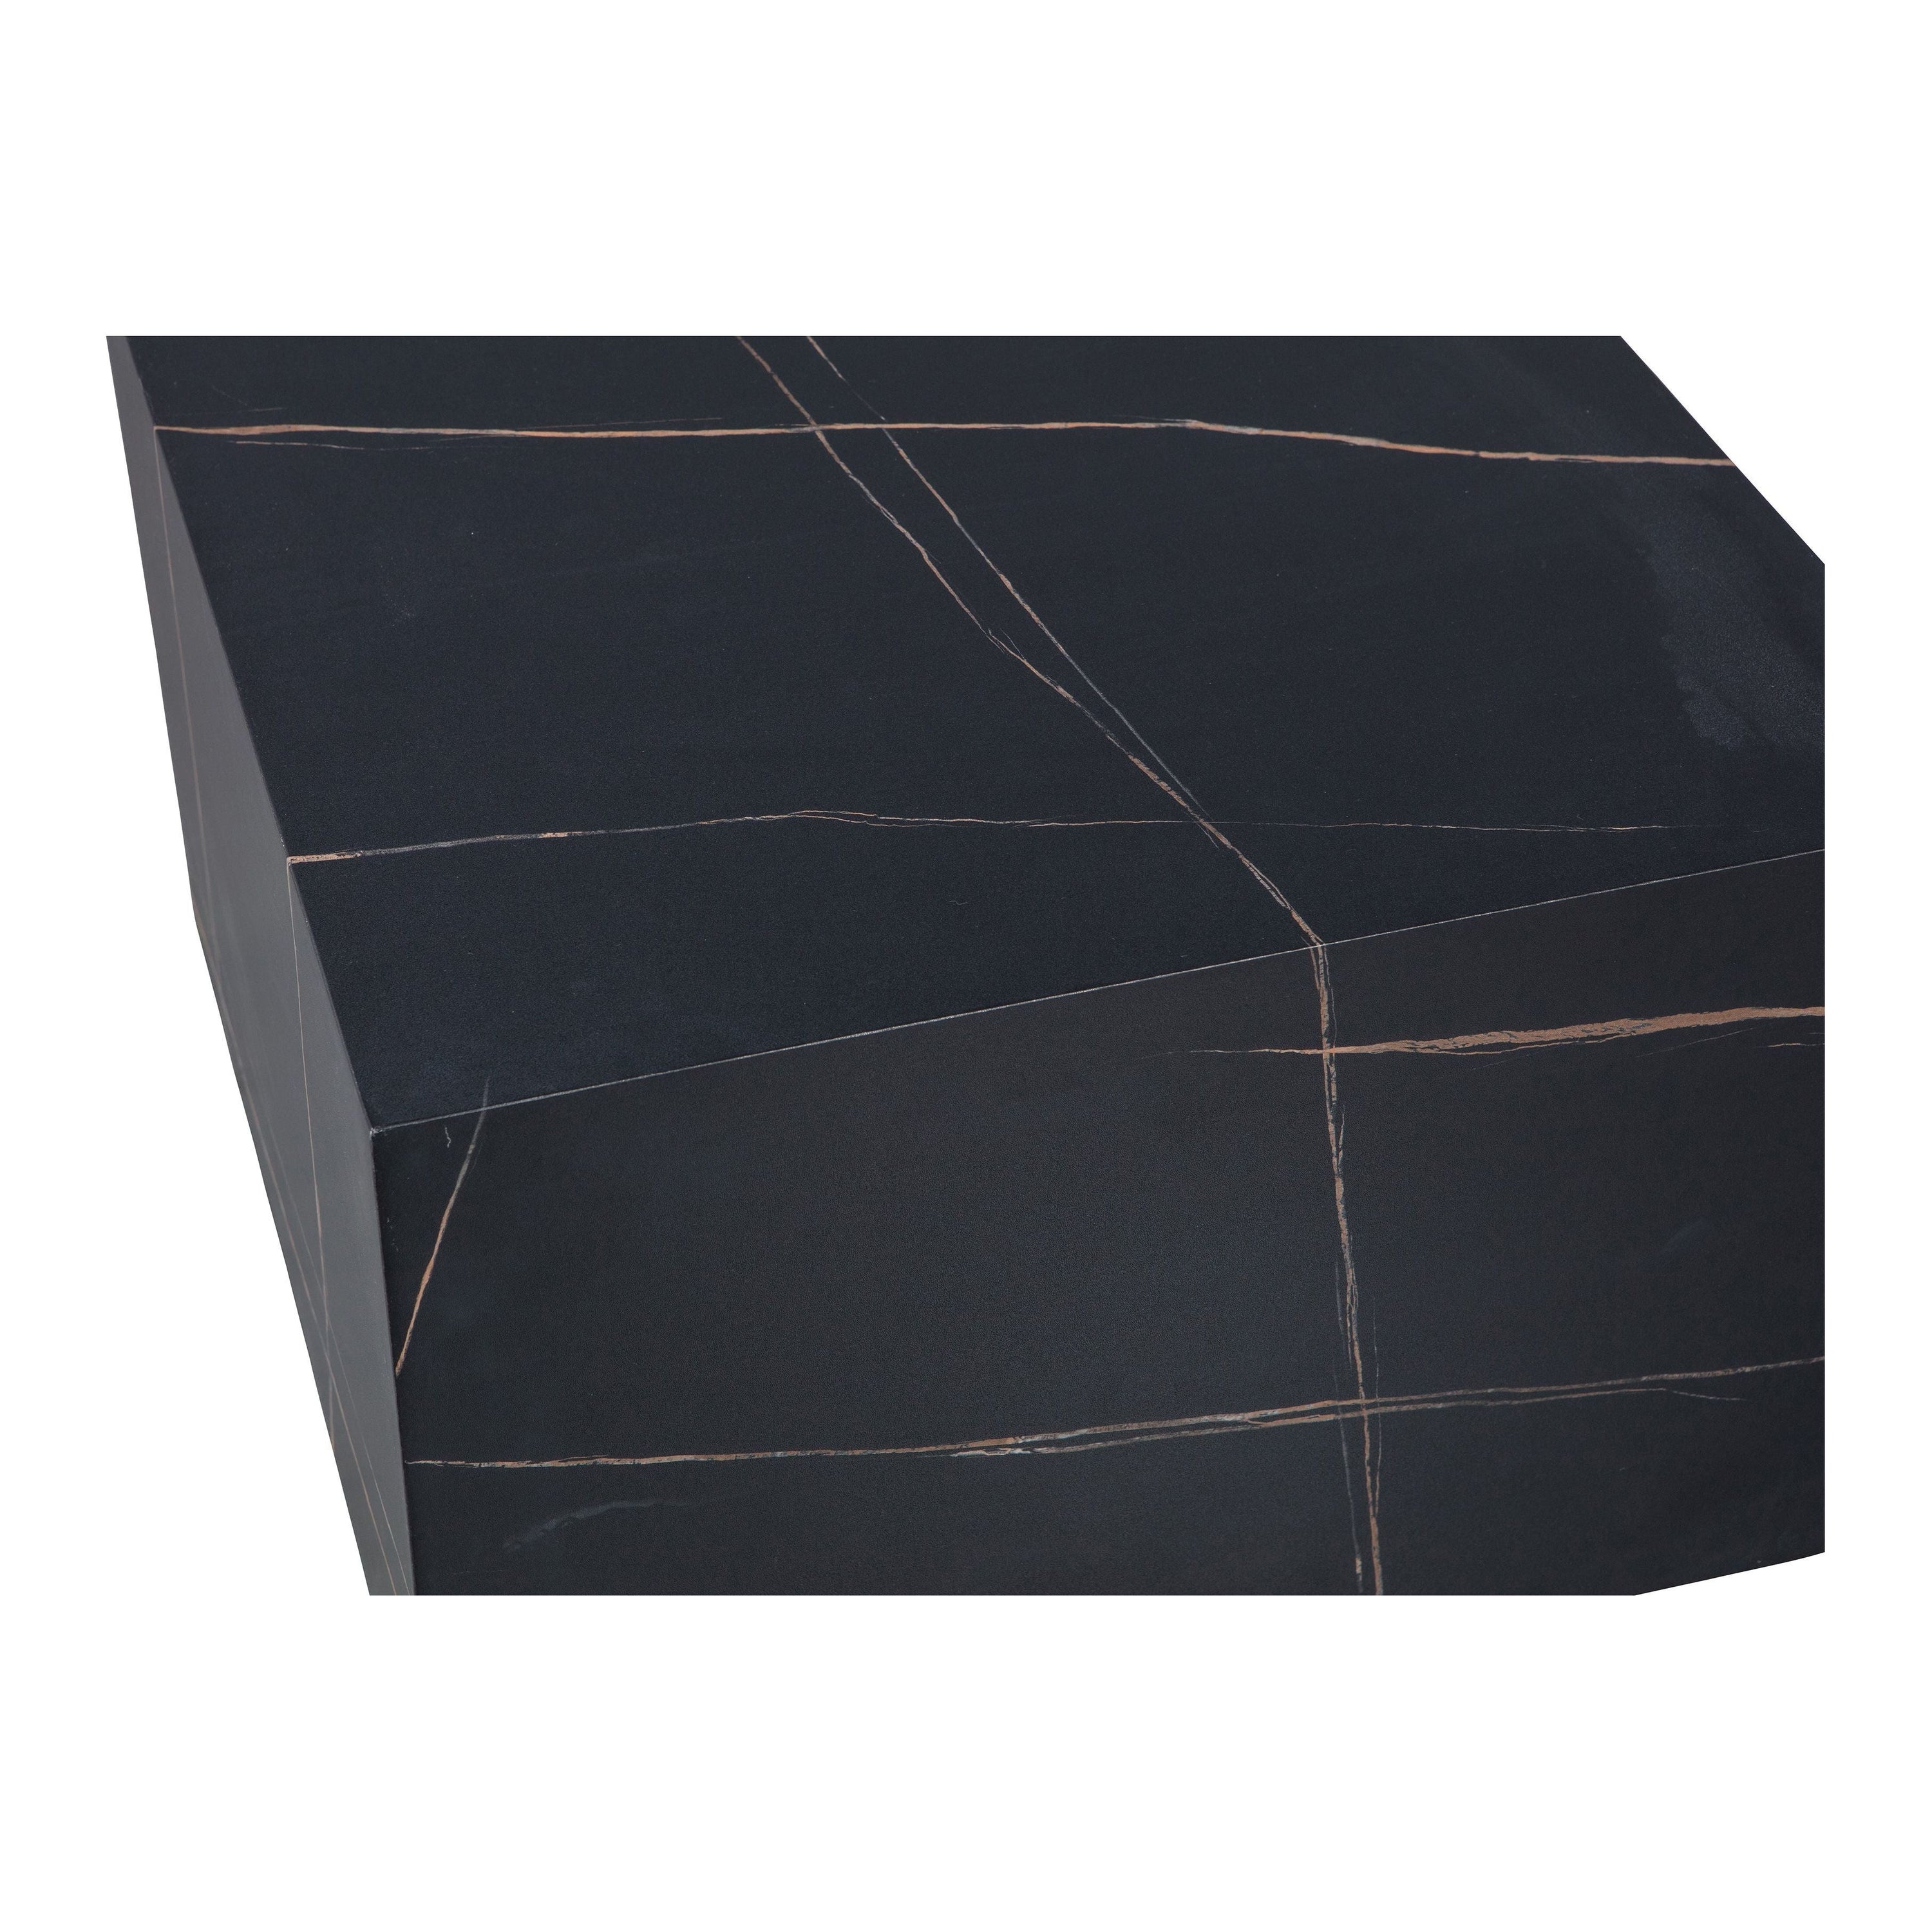 "BENJI" kavos staliukas, juoda spalva, 60x60 cm, medis